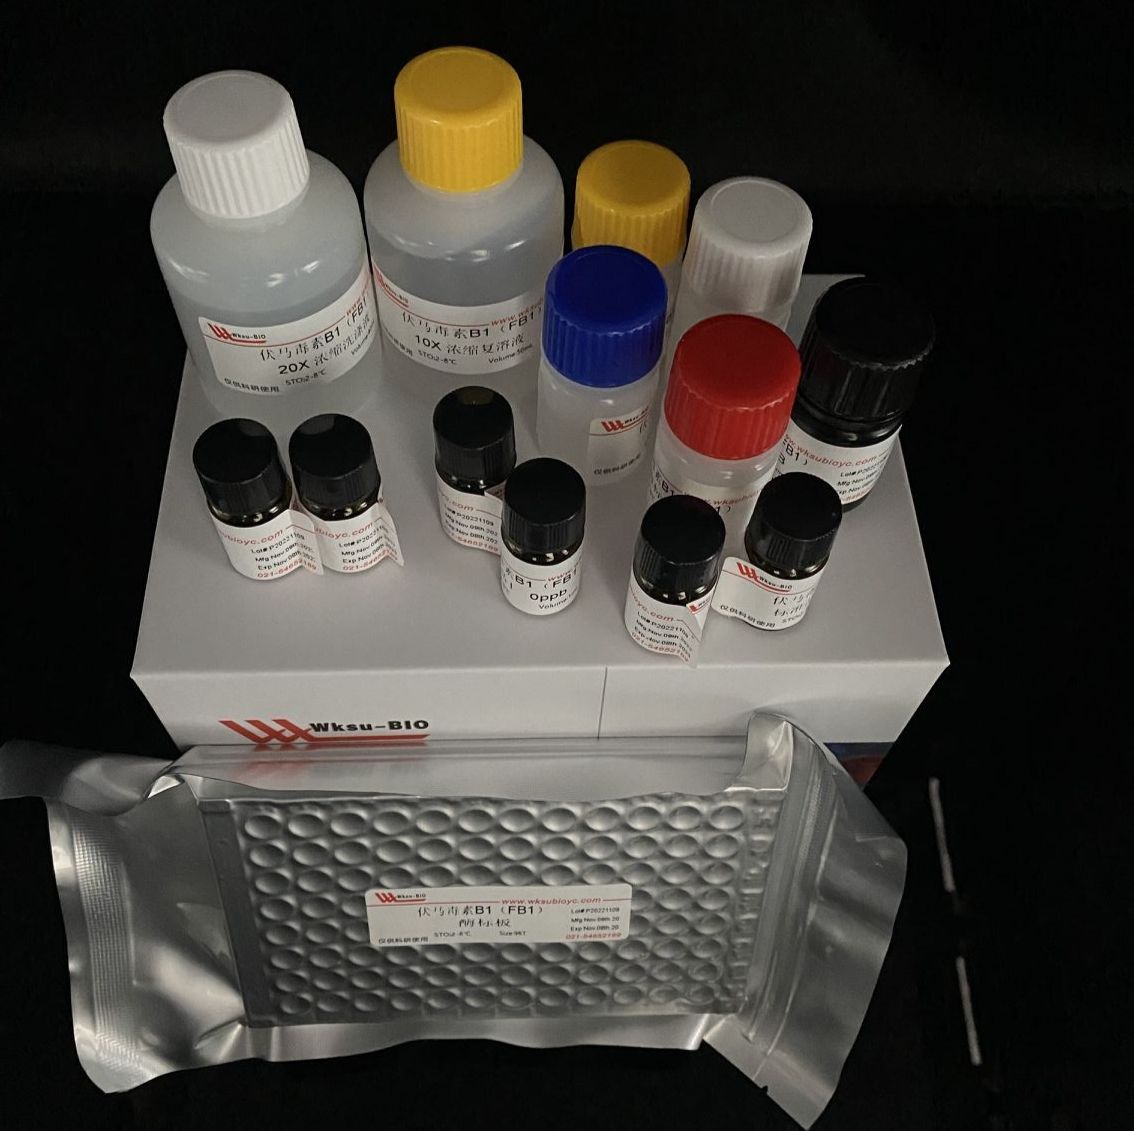 可溶性淀粉合成酶(SSS)试剂盒,微板法